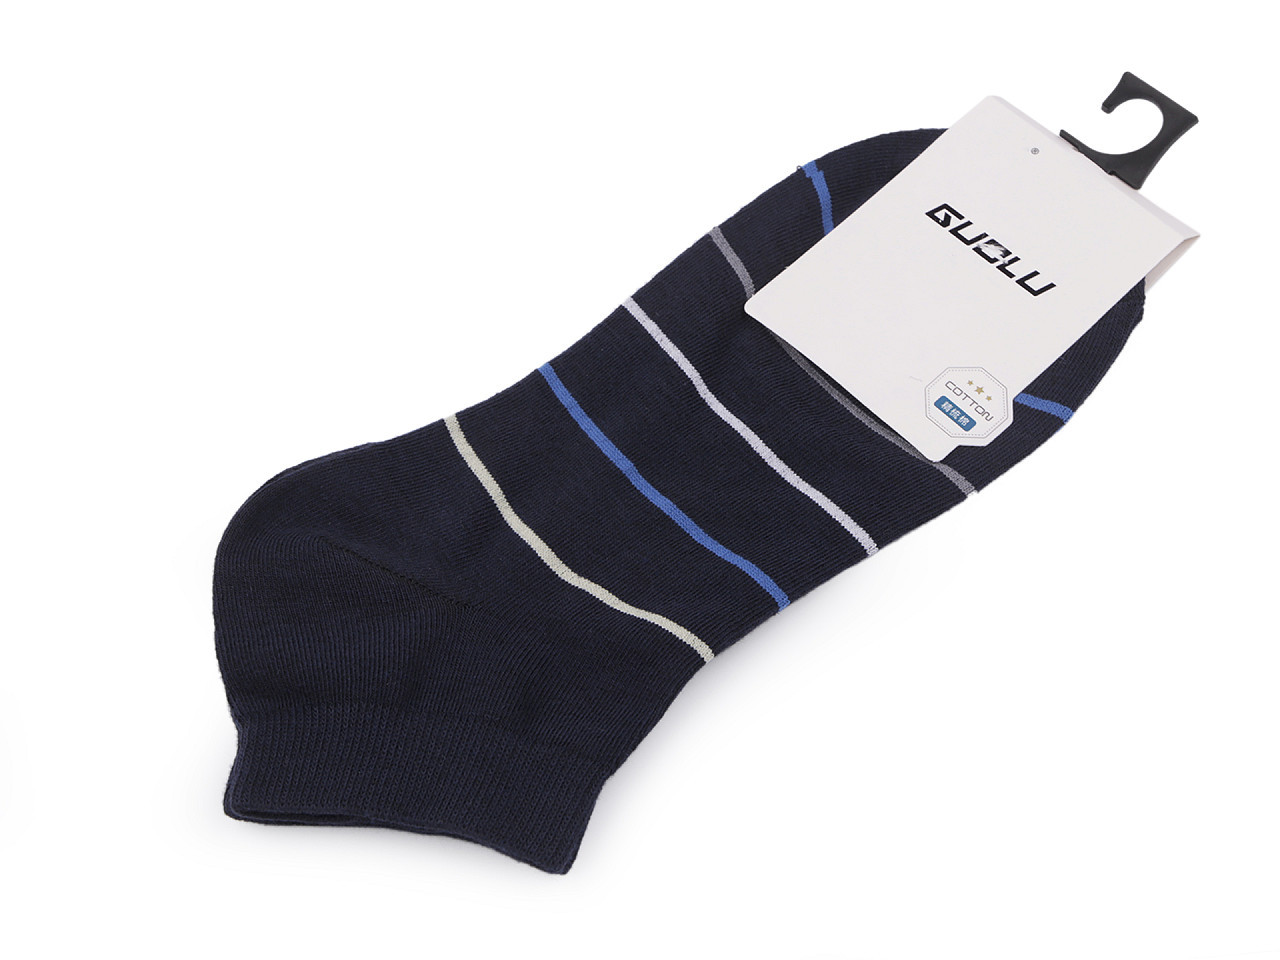 Pánské / chlapecké bavlněné ponožky kotníkové, barva 9 modrá tmavá proužky